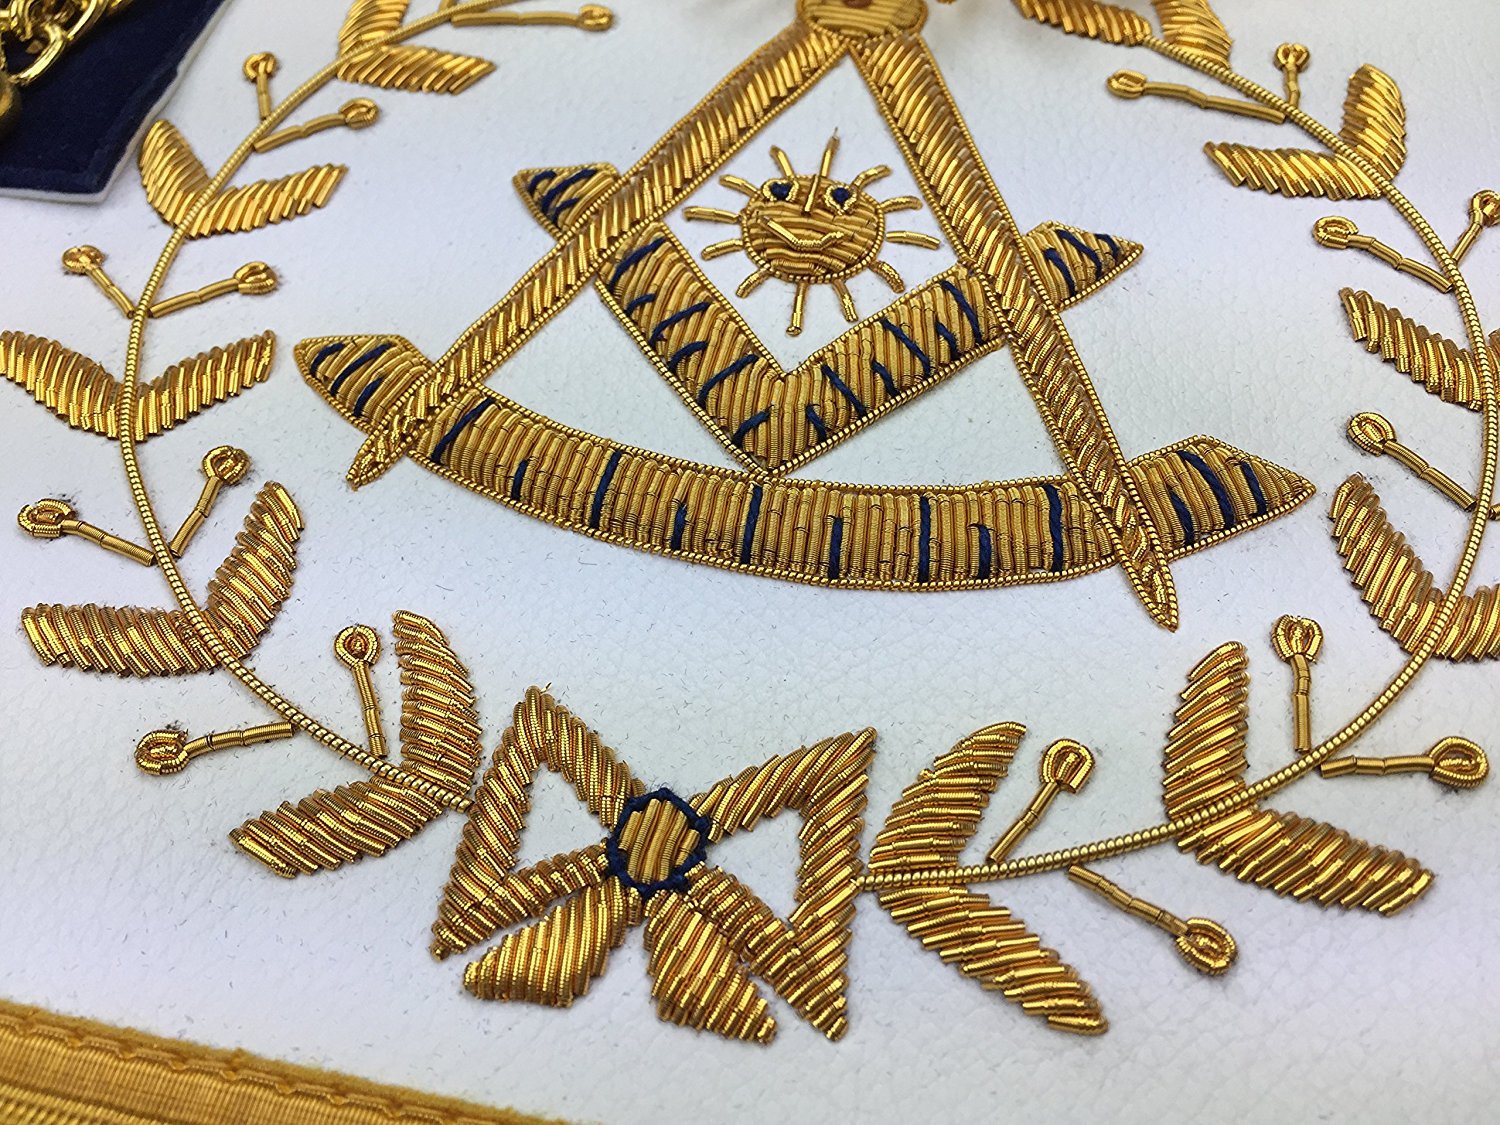 Past Master Blue Lodge Apron - Royal Navy Velvet with Gold Fringe - Bricks Masons